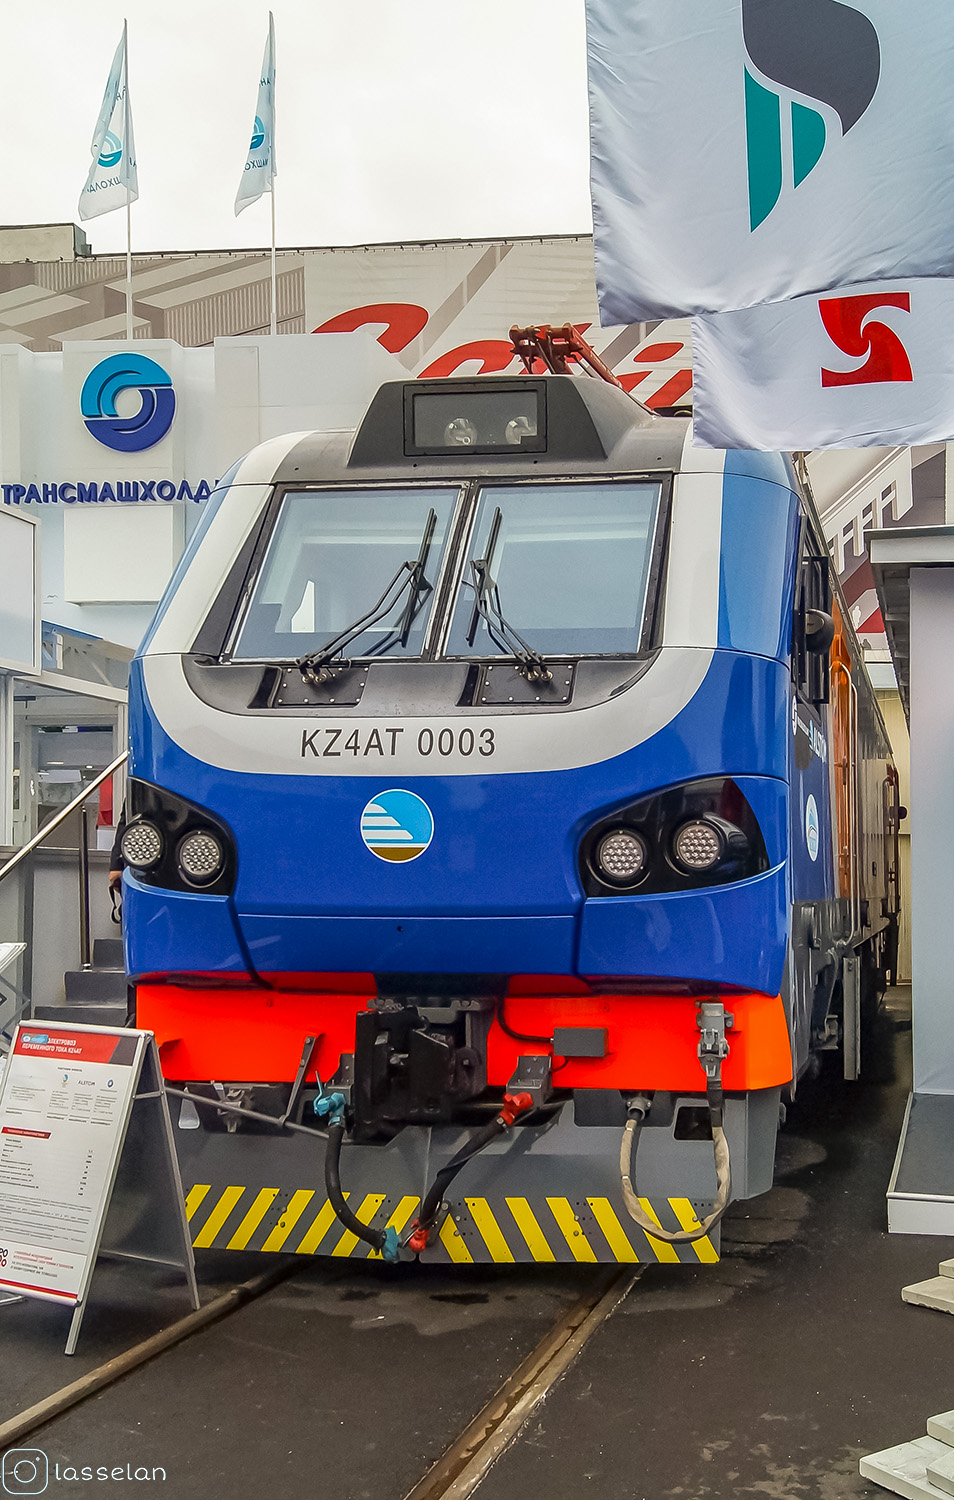 KZ4AT-0003; Московская железная дорога — V Международный железнодорожный салон "ЭКСПО 1520" 2015